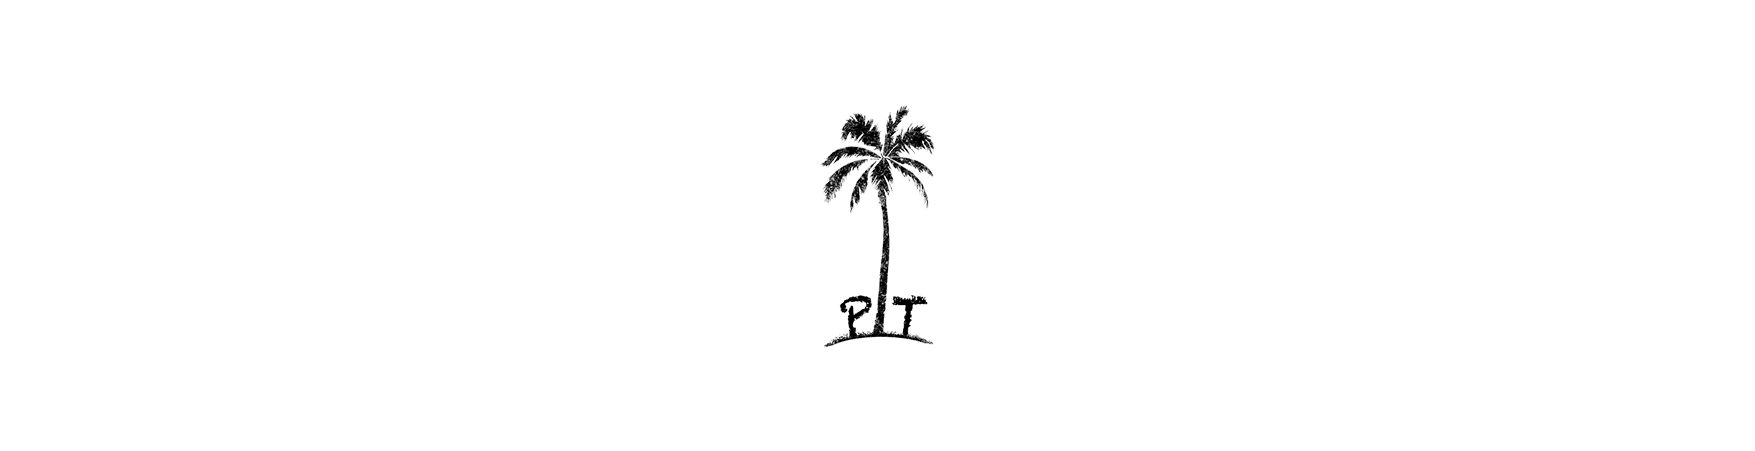 LA Playa Tree